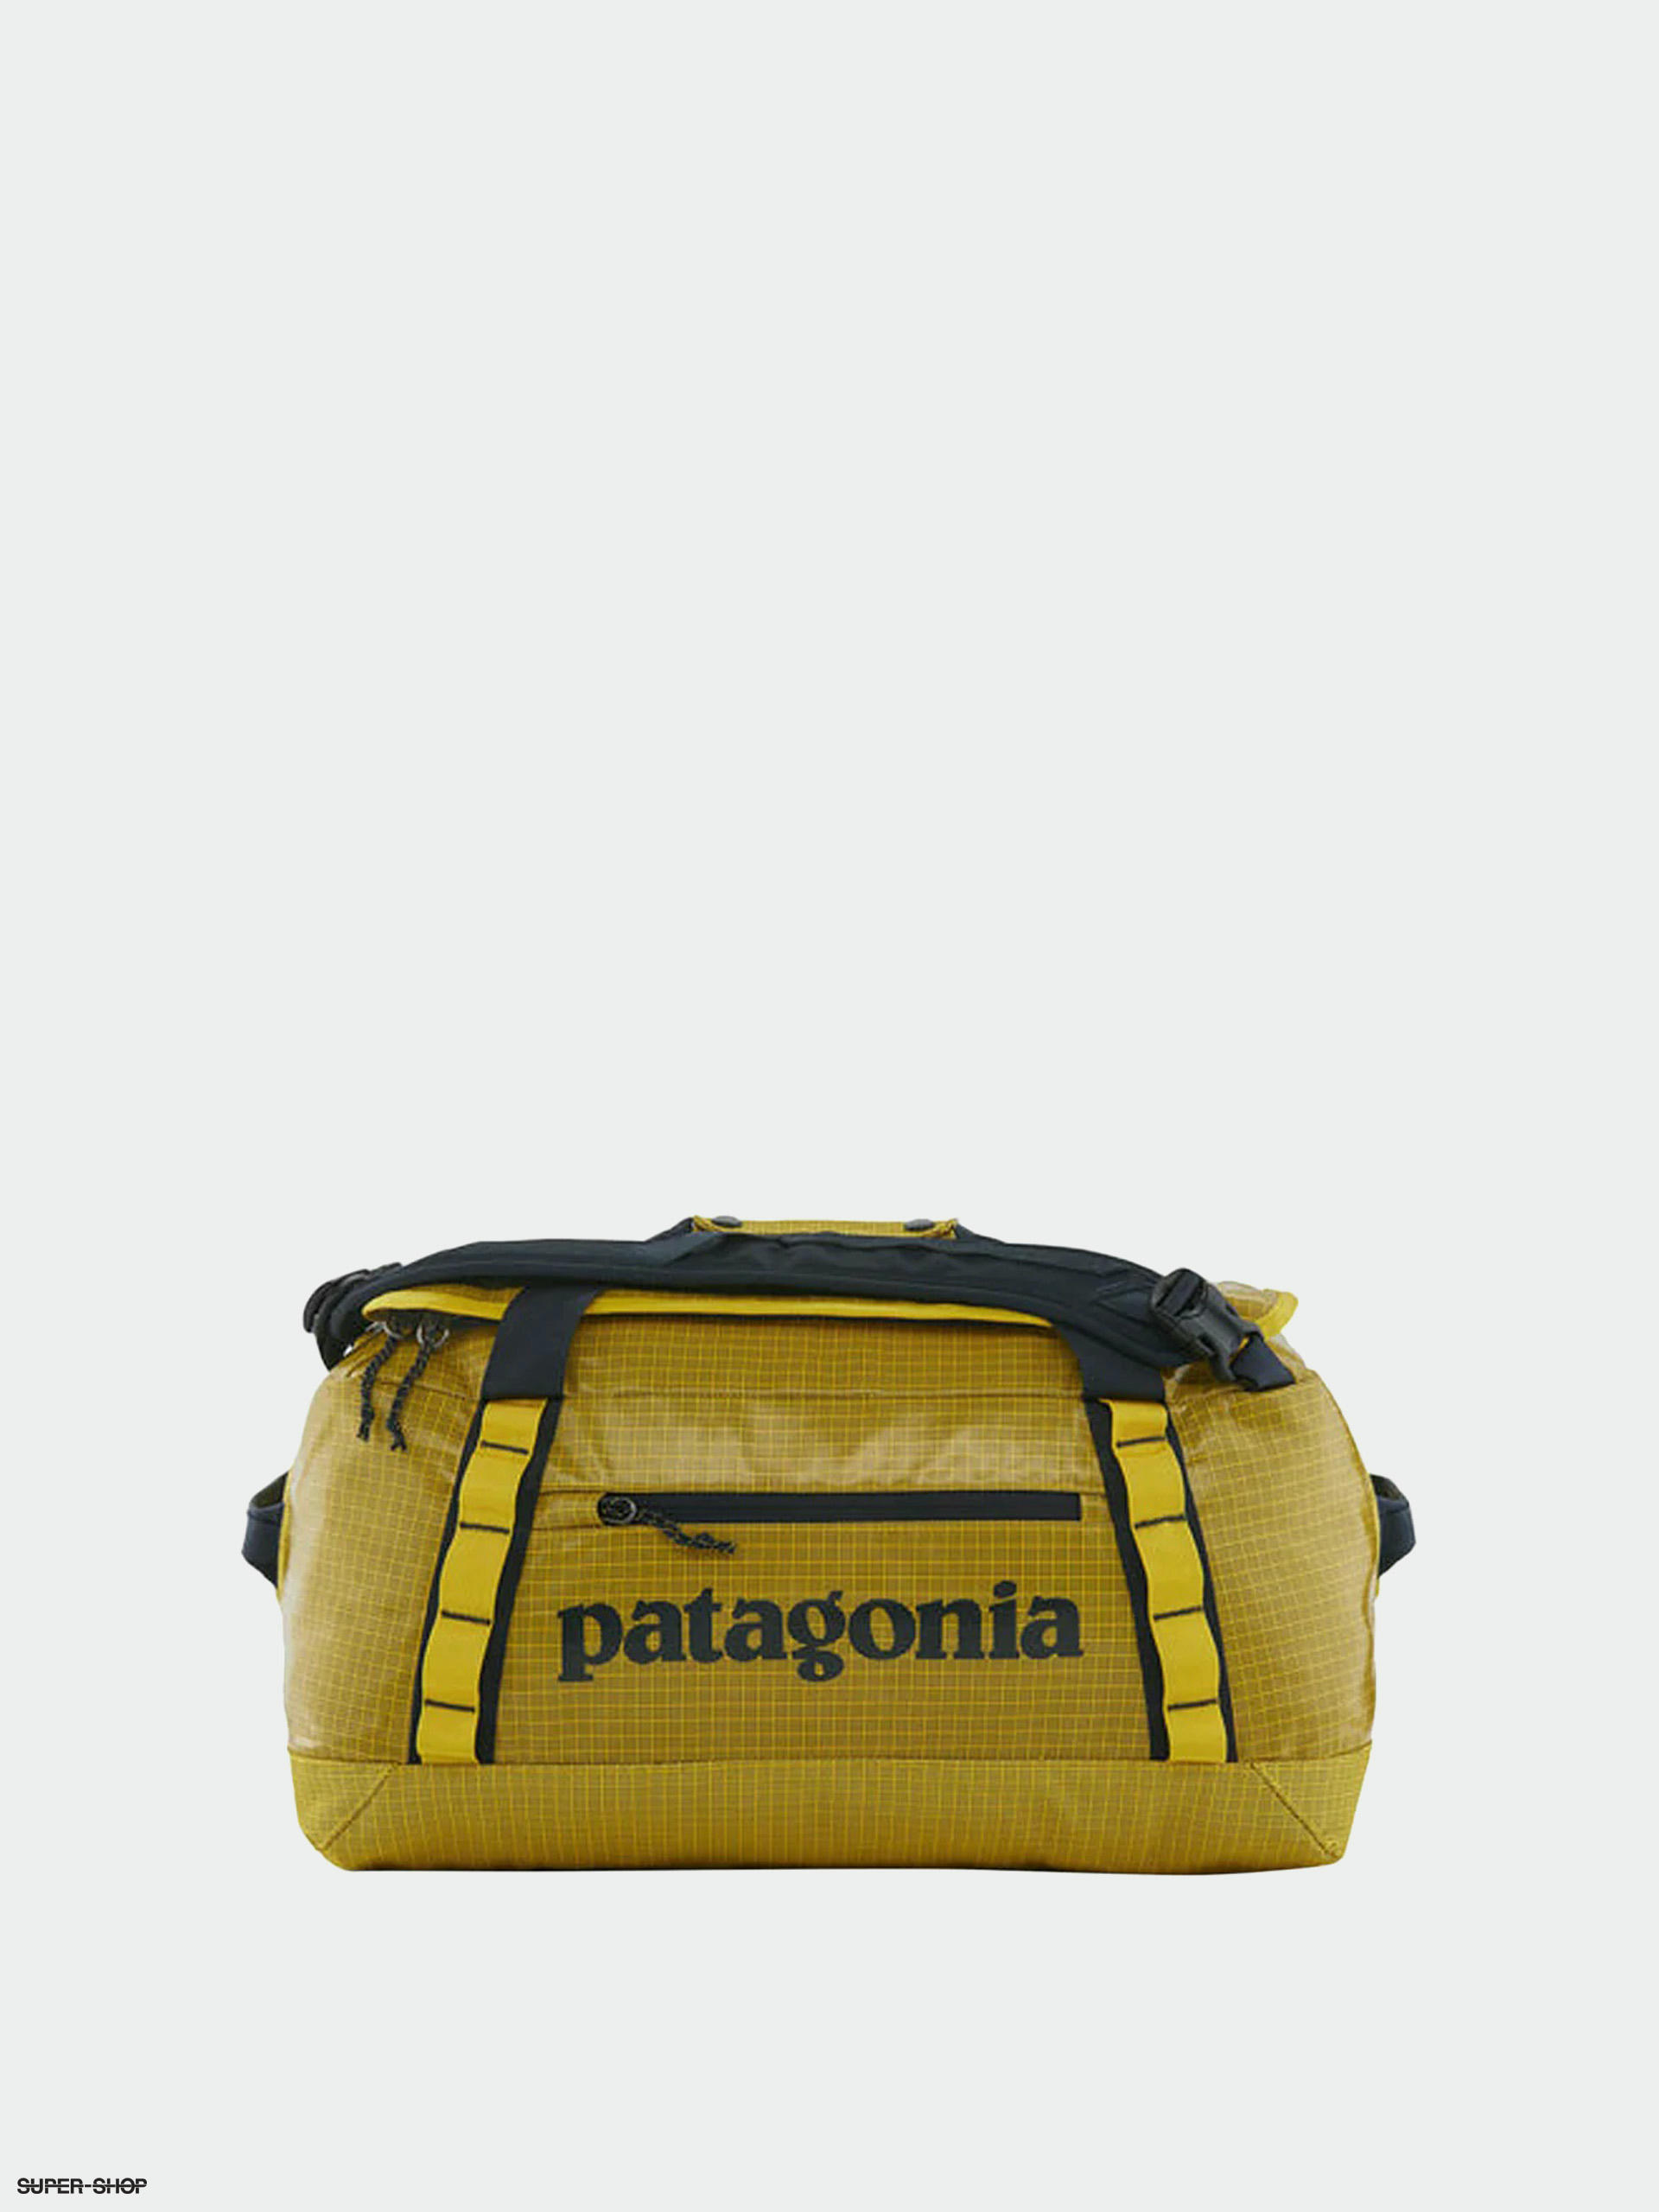 Patagonia Black Hole Duffel Bag - 40L - Teskeys